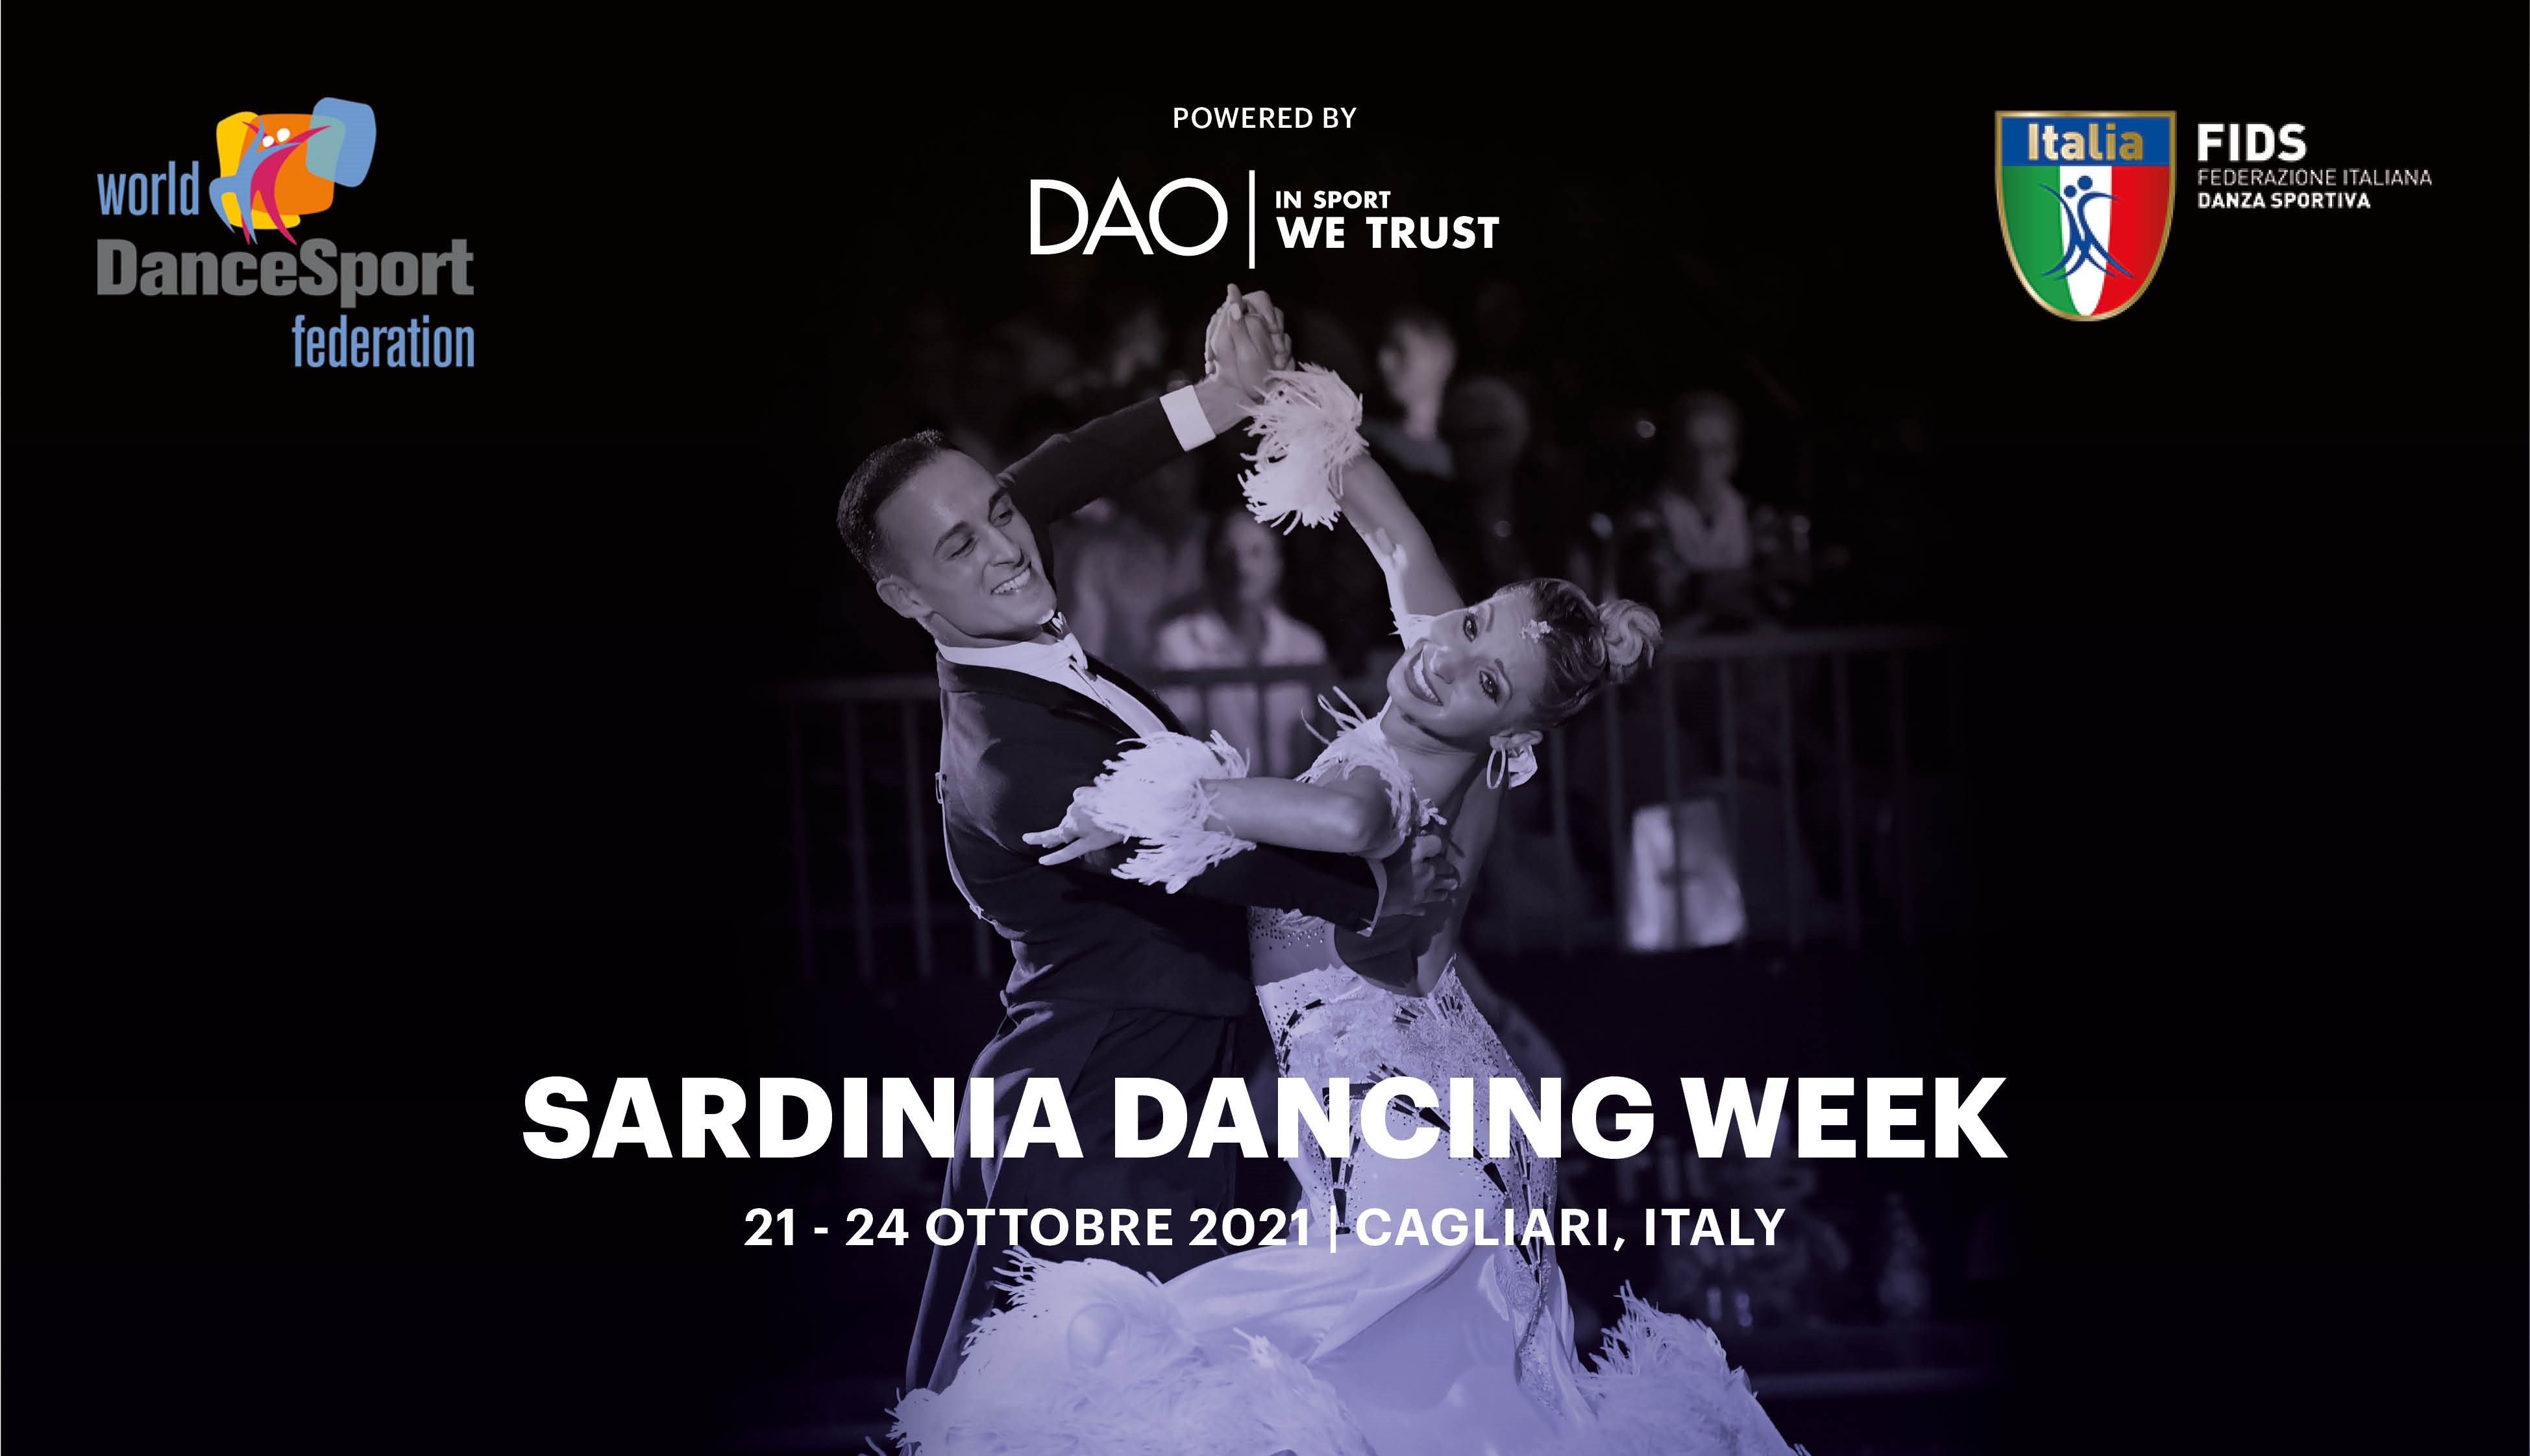 FIDS organizza i Campionati del Mondo WDSF Senior III e IV Standard, Europeo Adult Latin e Mondiale PD 10 danze